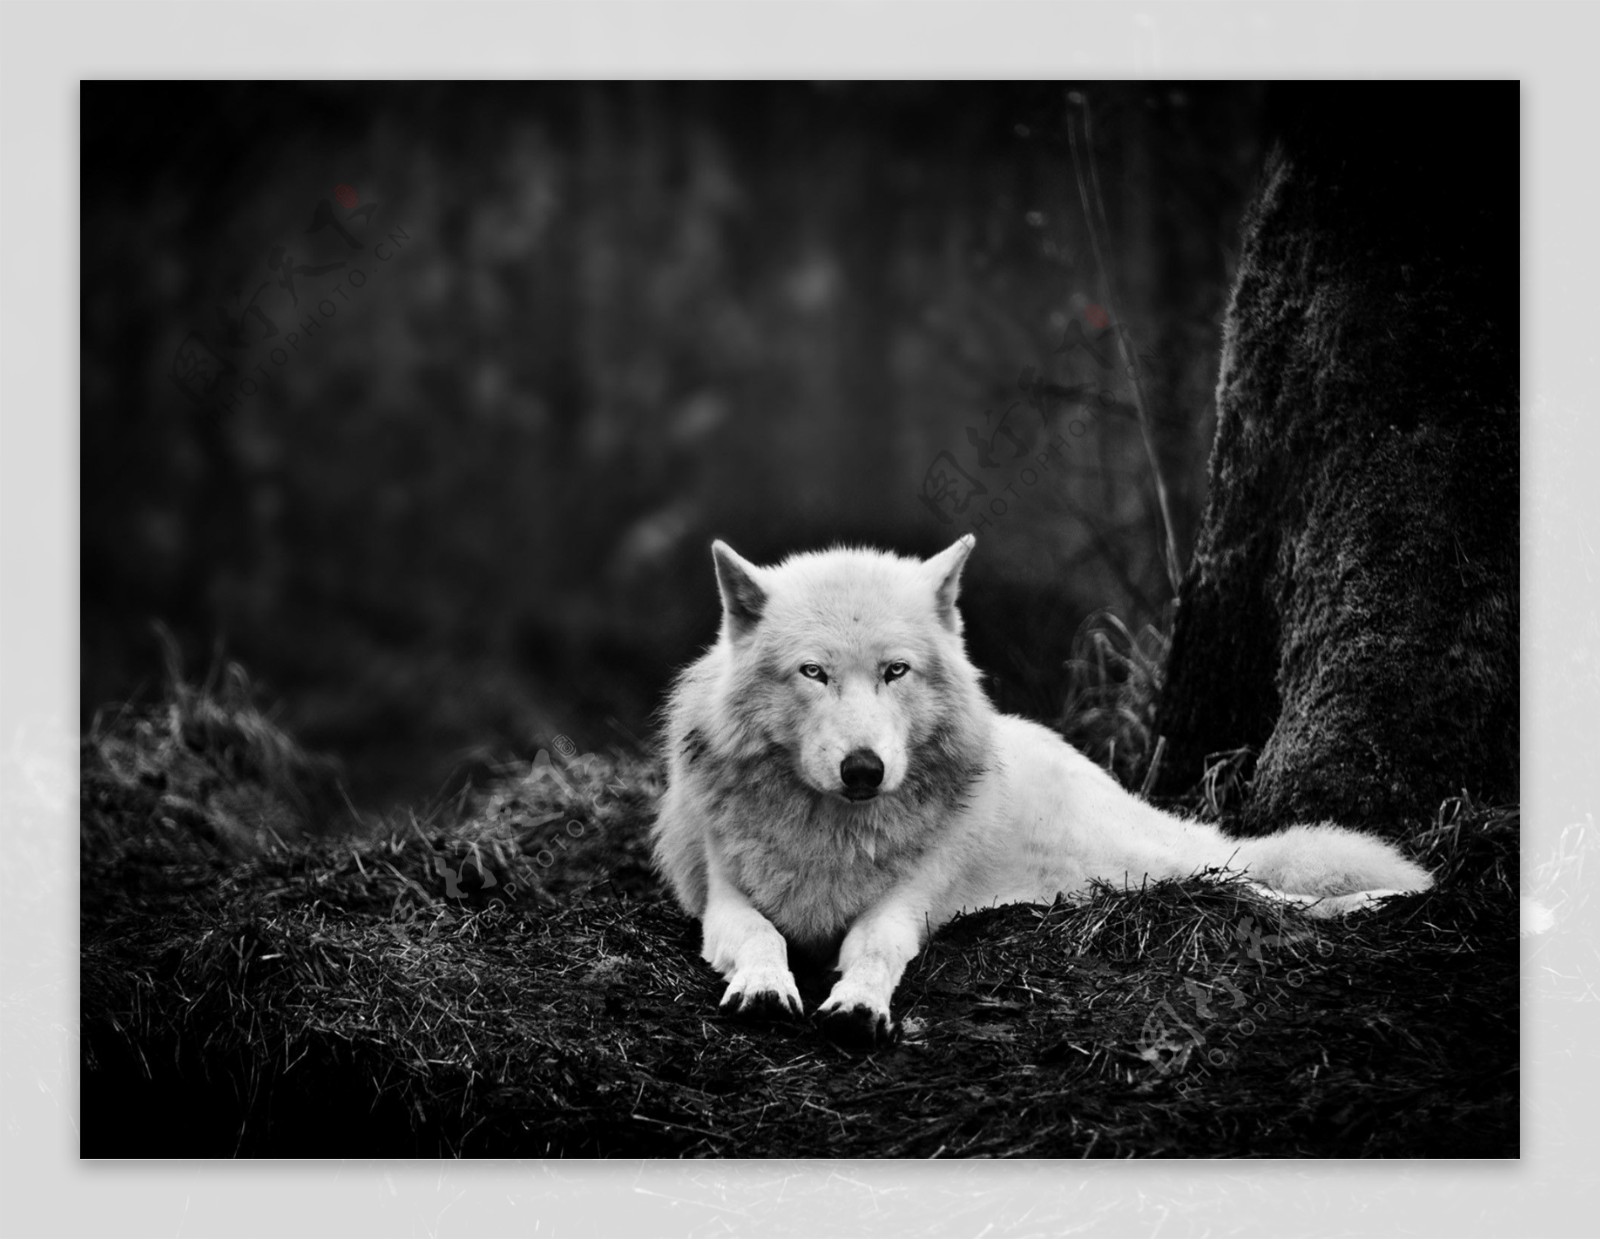 野生白狼图片